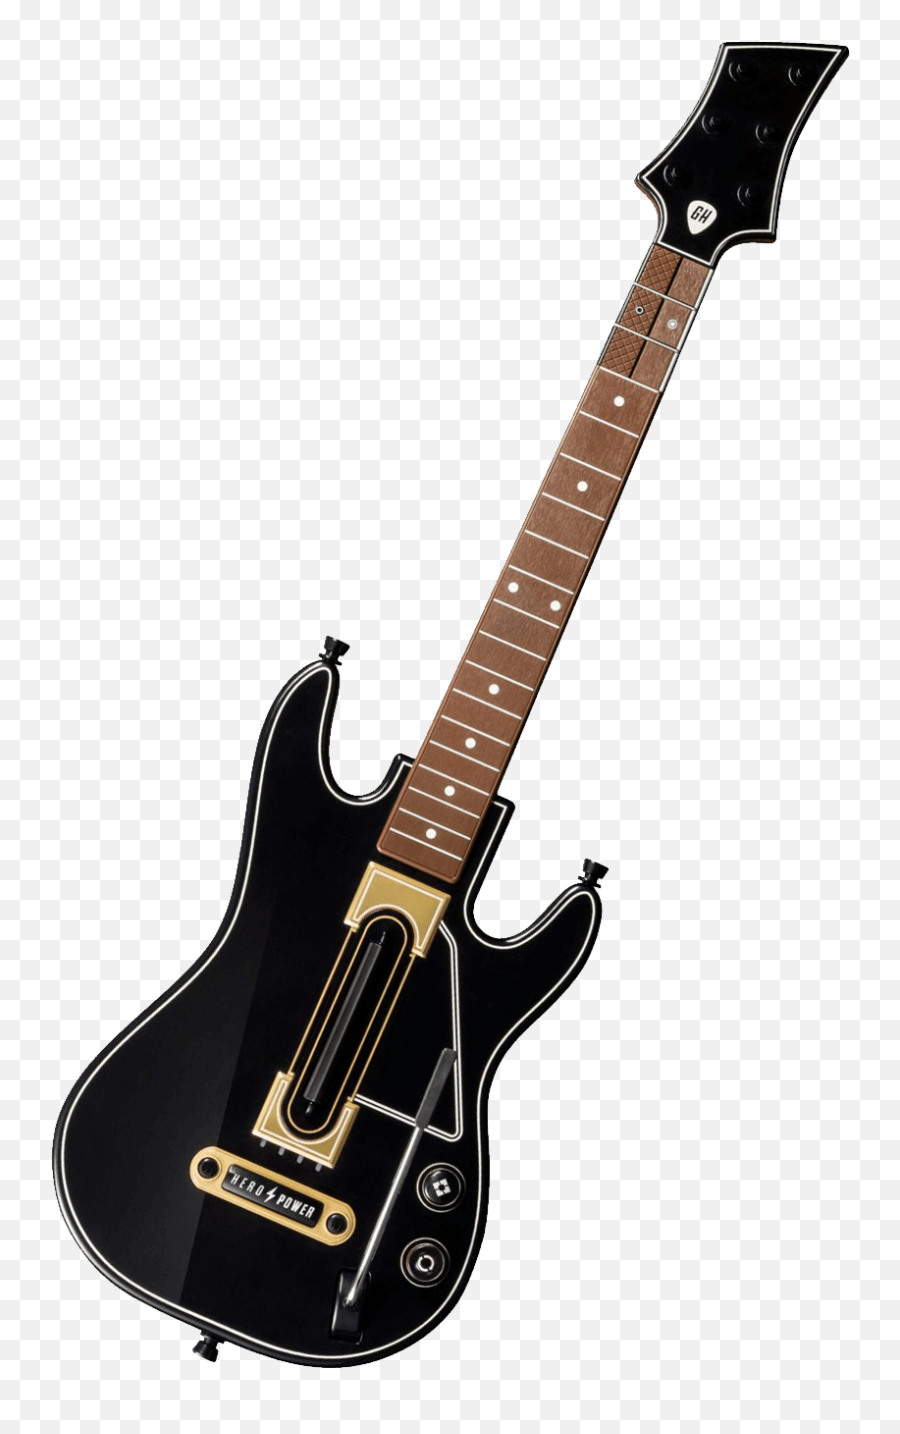 Music Instrument Guitar Hero Ps4 Controller Not Working - Guitar Hero Live Guitar Png Emoji,Clone Hero Logo